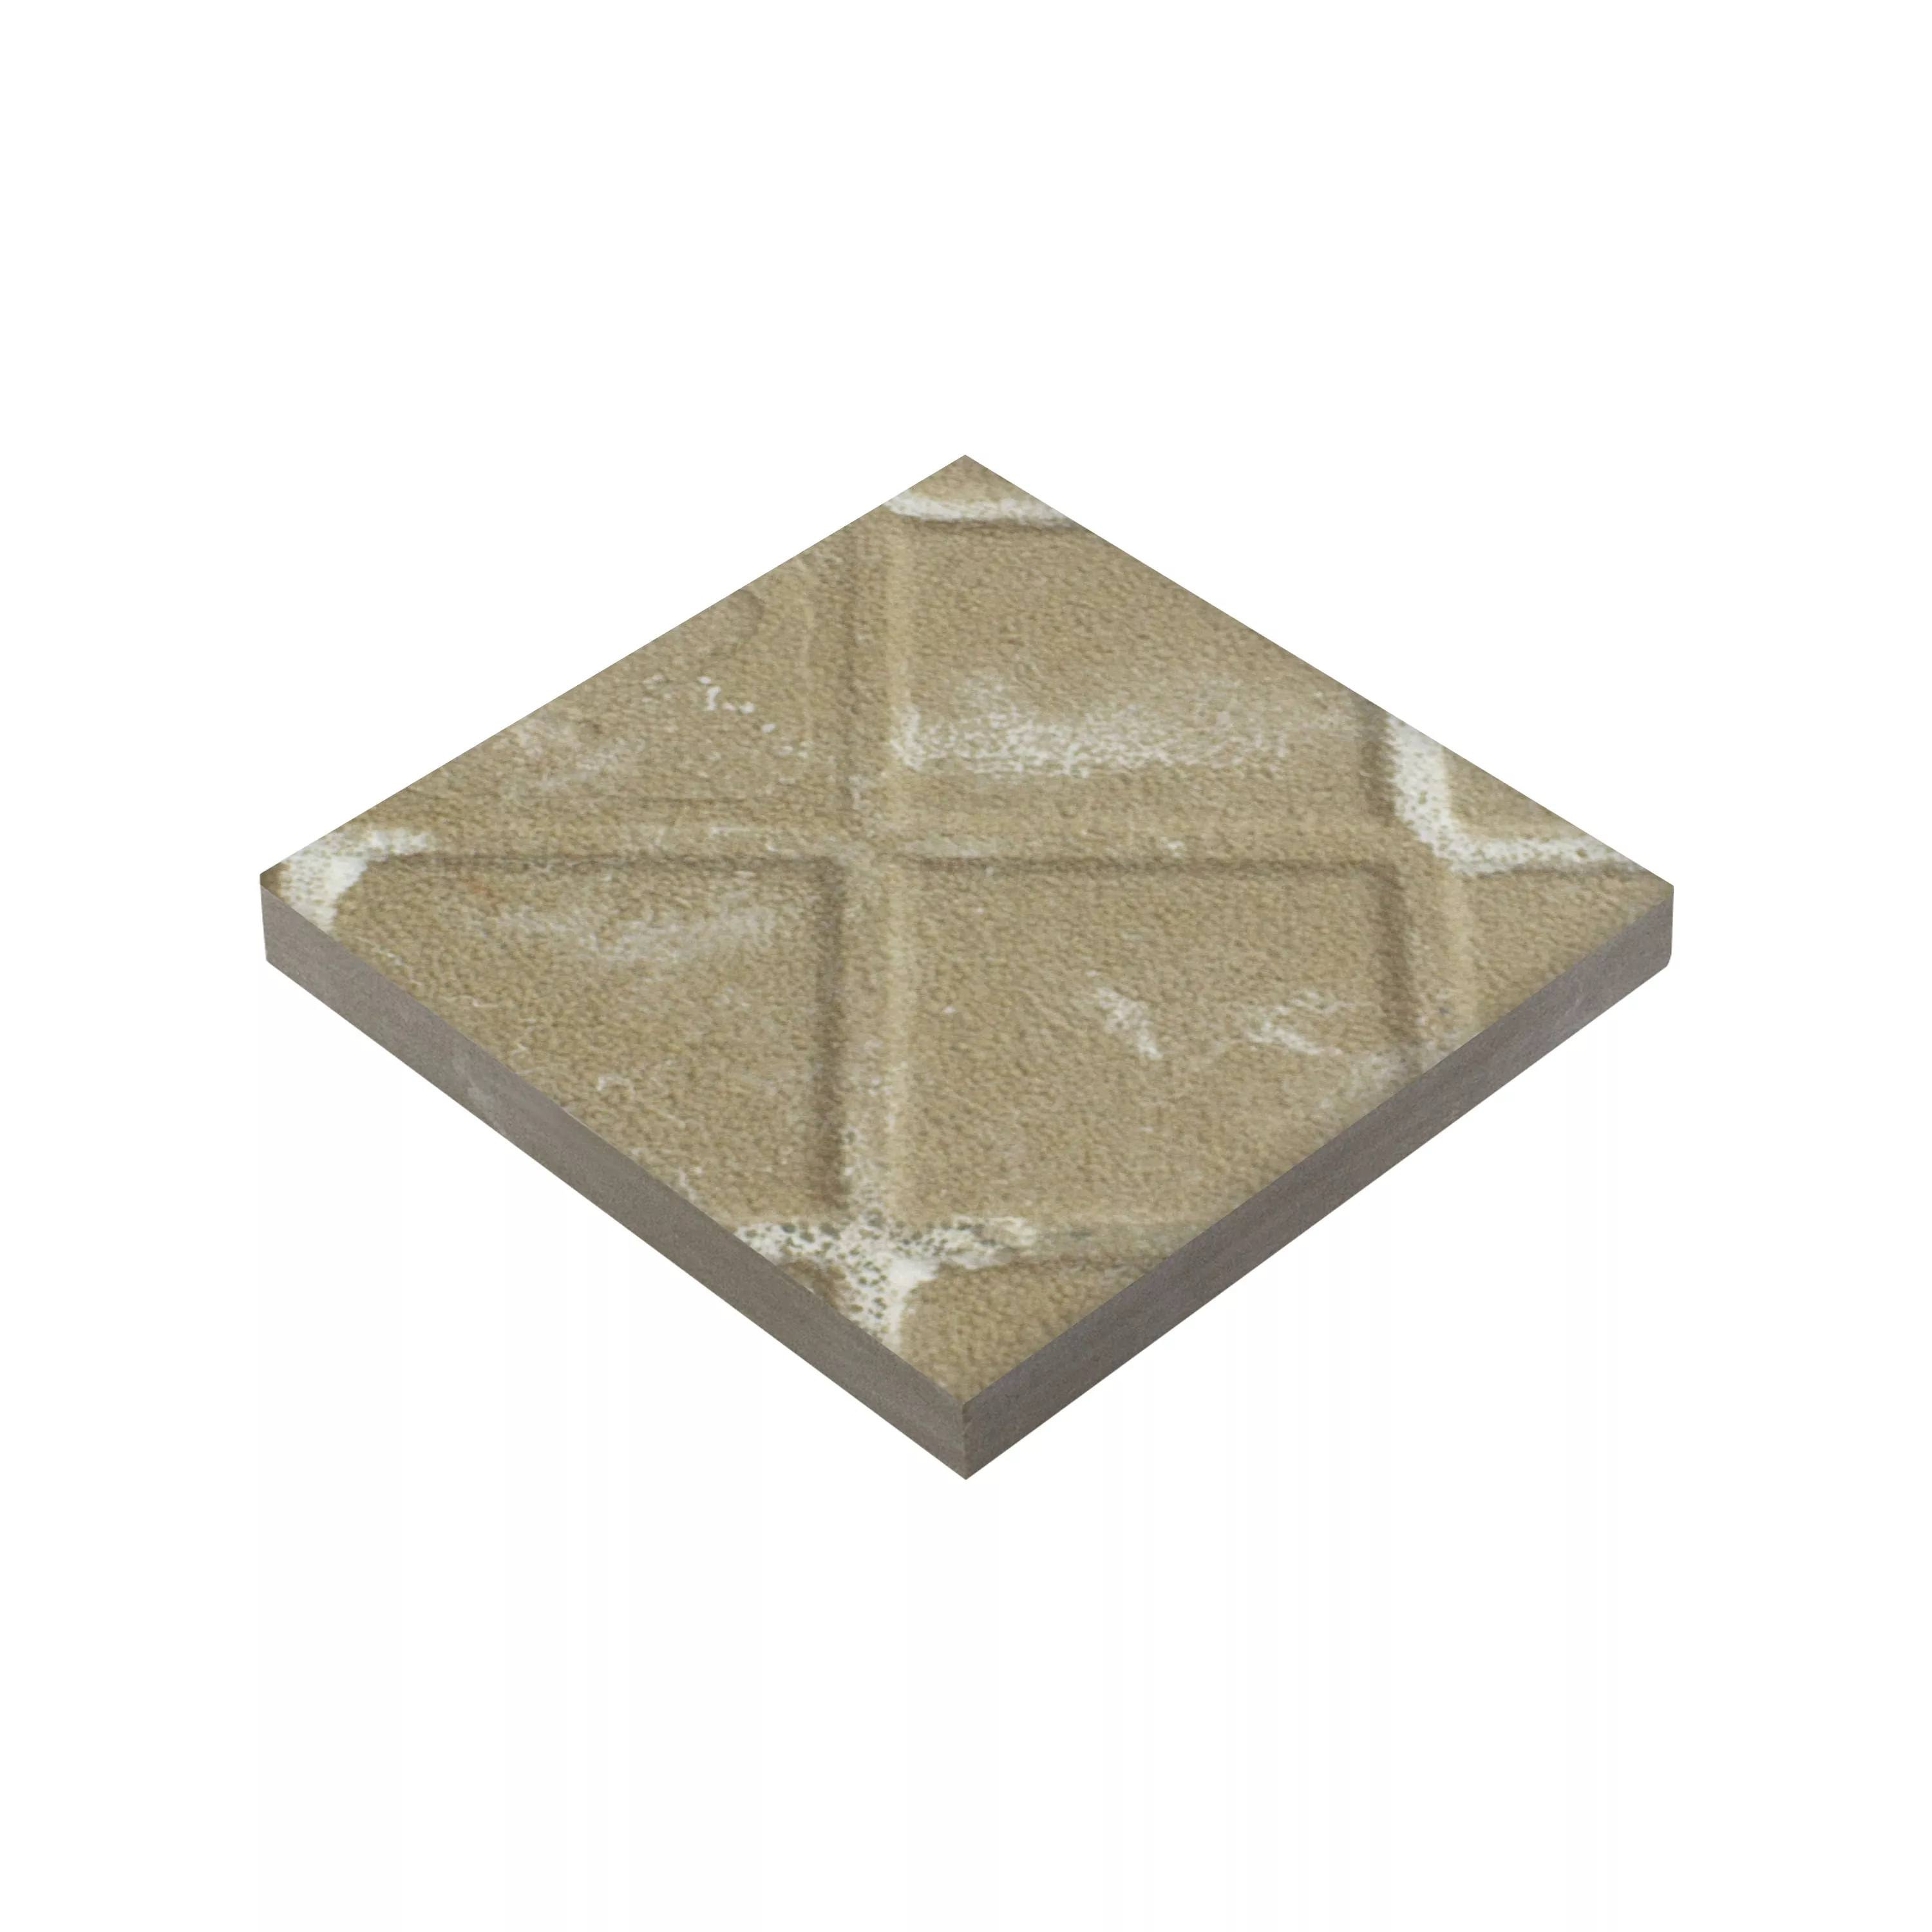 Πορσελάνινα Σκεύη Πλακάκια Genexia Uni Μπεζ Ροζόνη 4,6x4,6cm